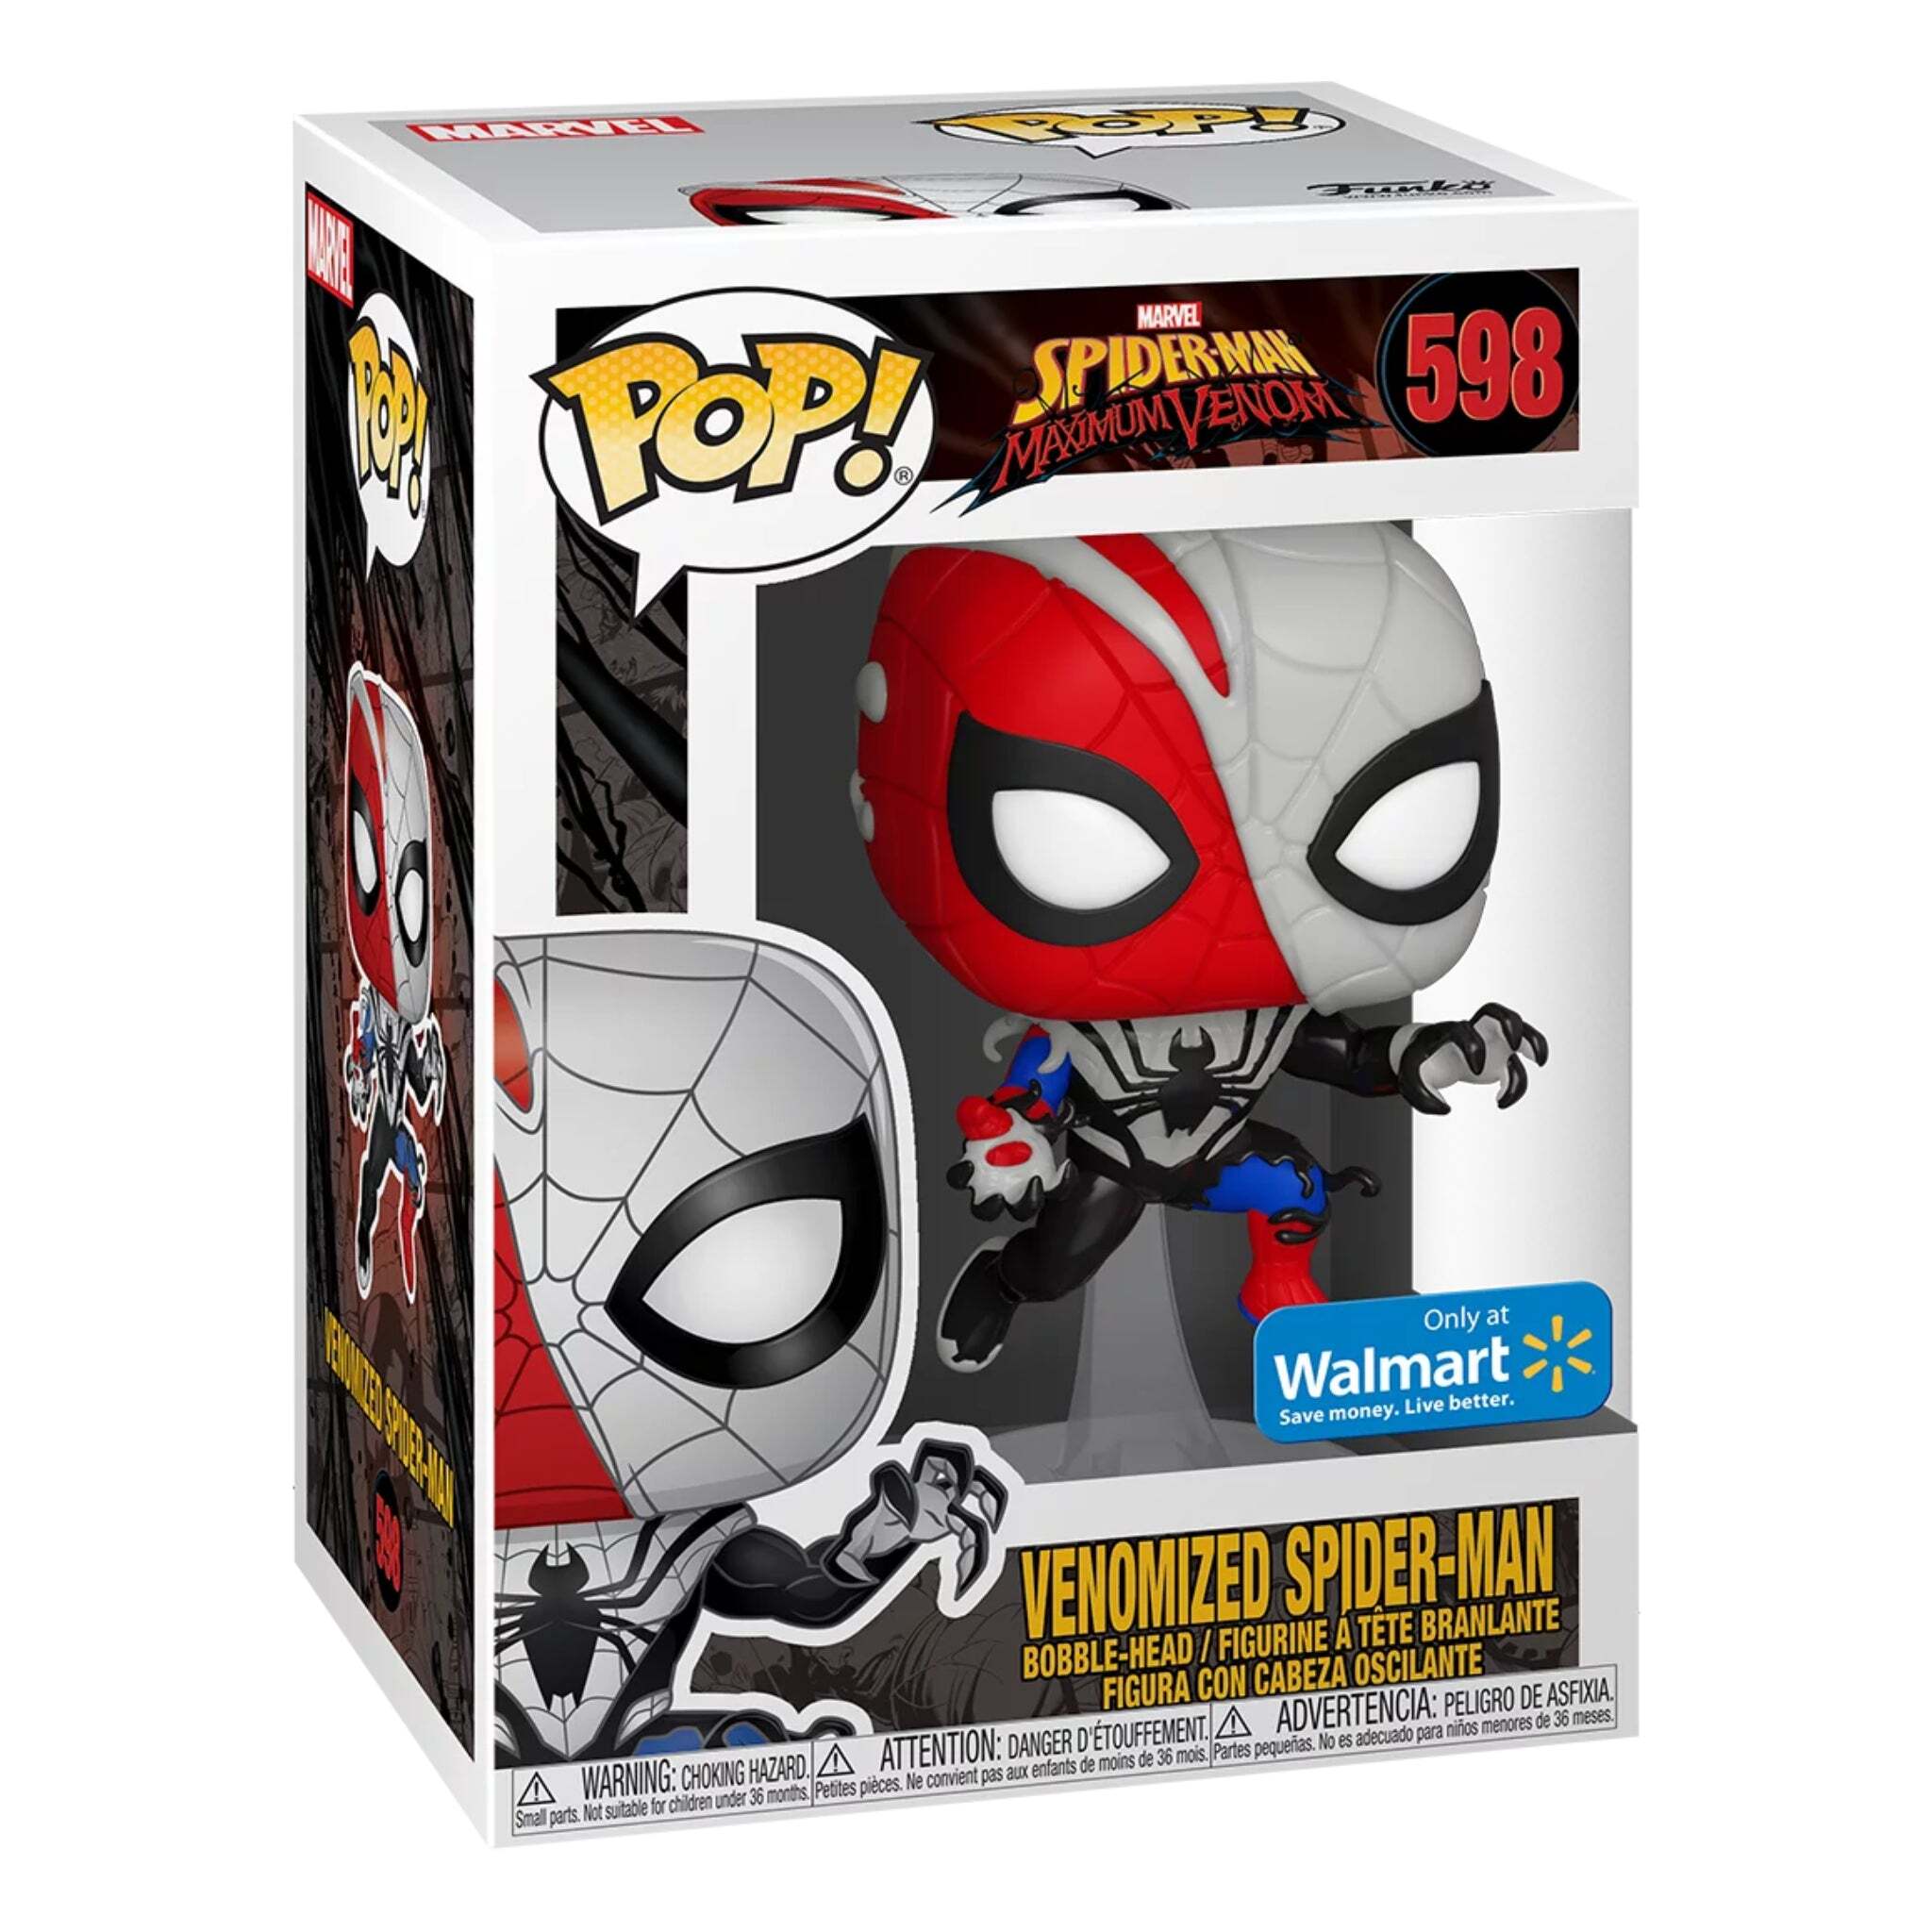 Venomized Spider-Man Funko Pop! WALMART EXCLUSIVE